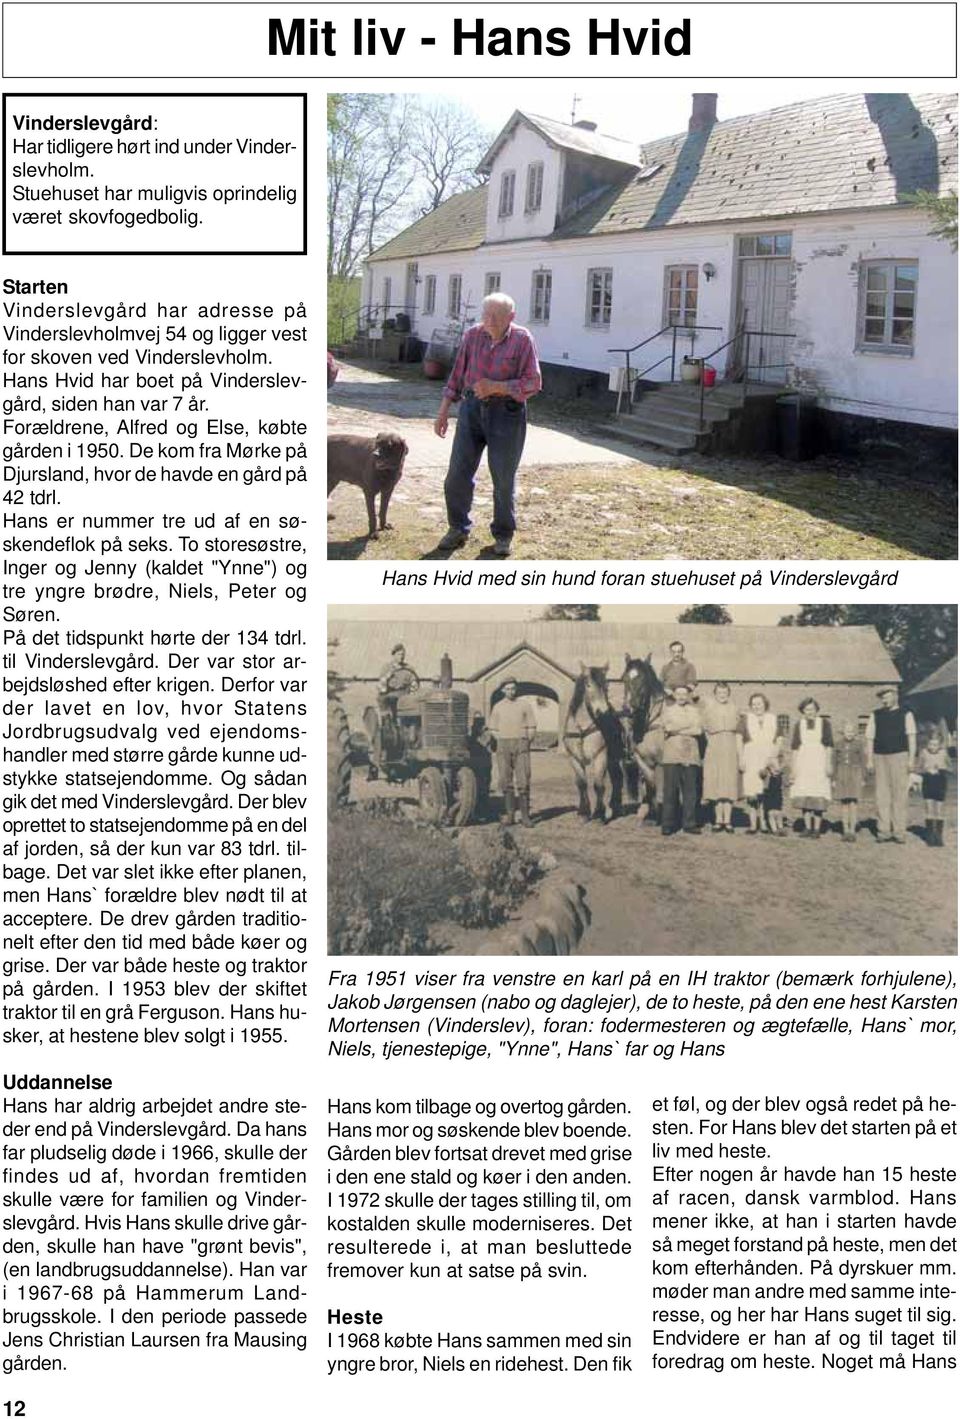 Forældrene, Alfred og Else, købte gården i 1950. De kom fra Mørke på Djursland, hvor de havde en gård på 42 tdrl. Hans er nummer tre ud af en søskendeflok på seks.